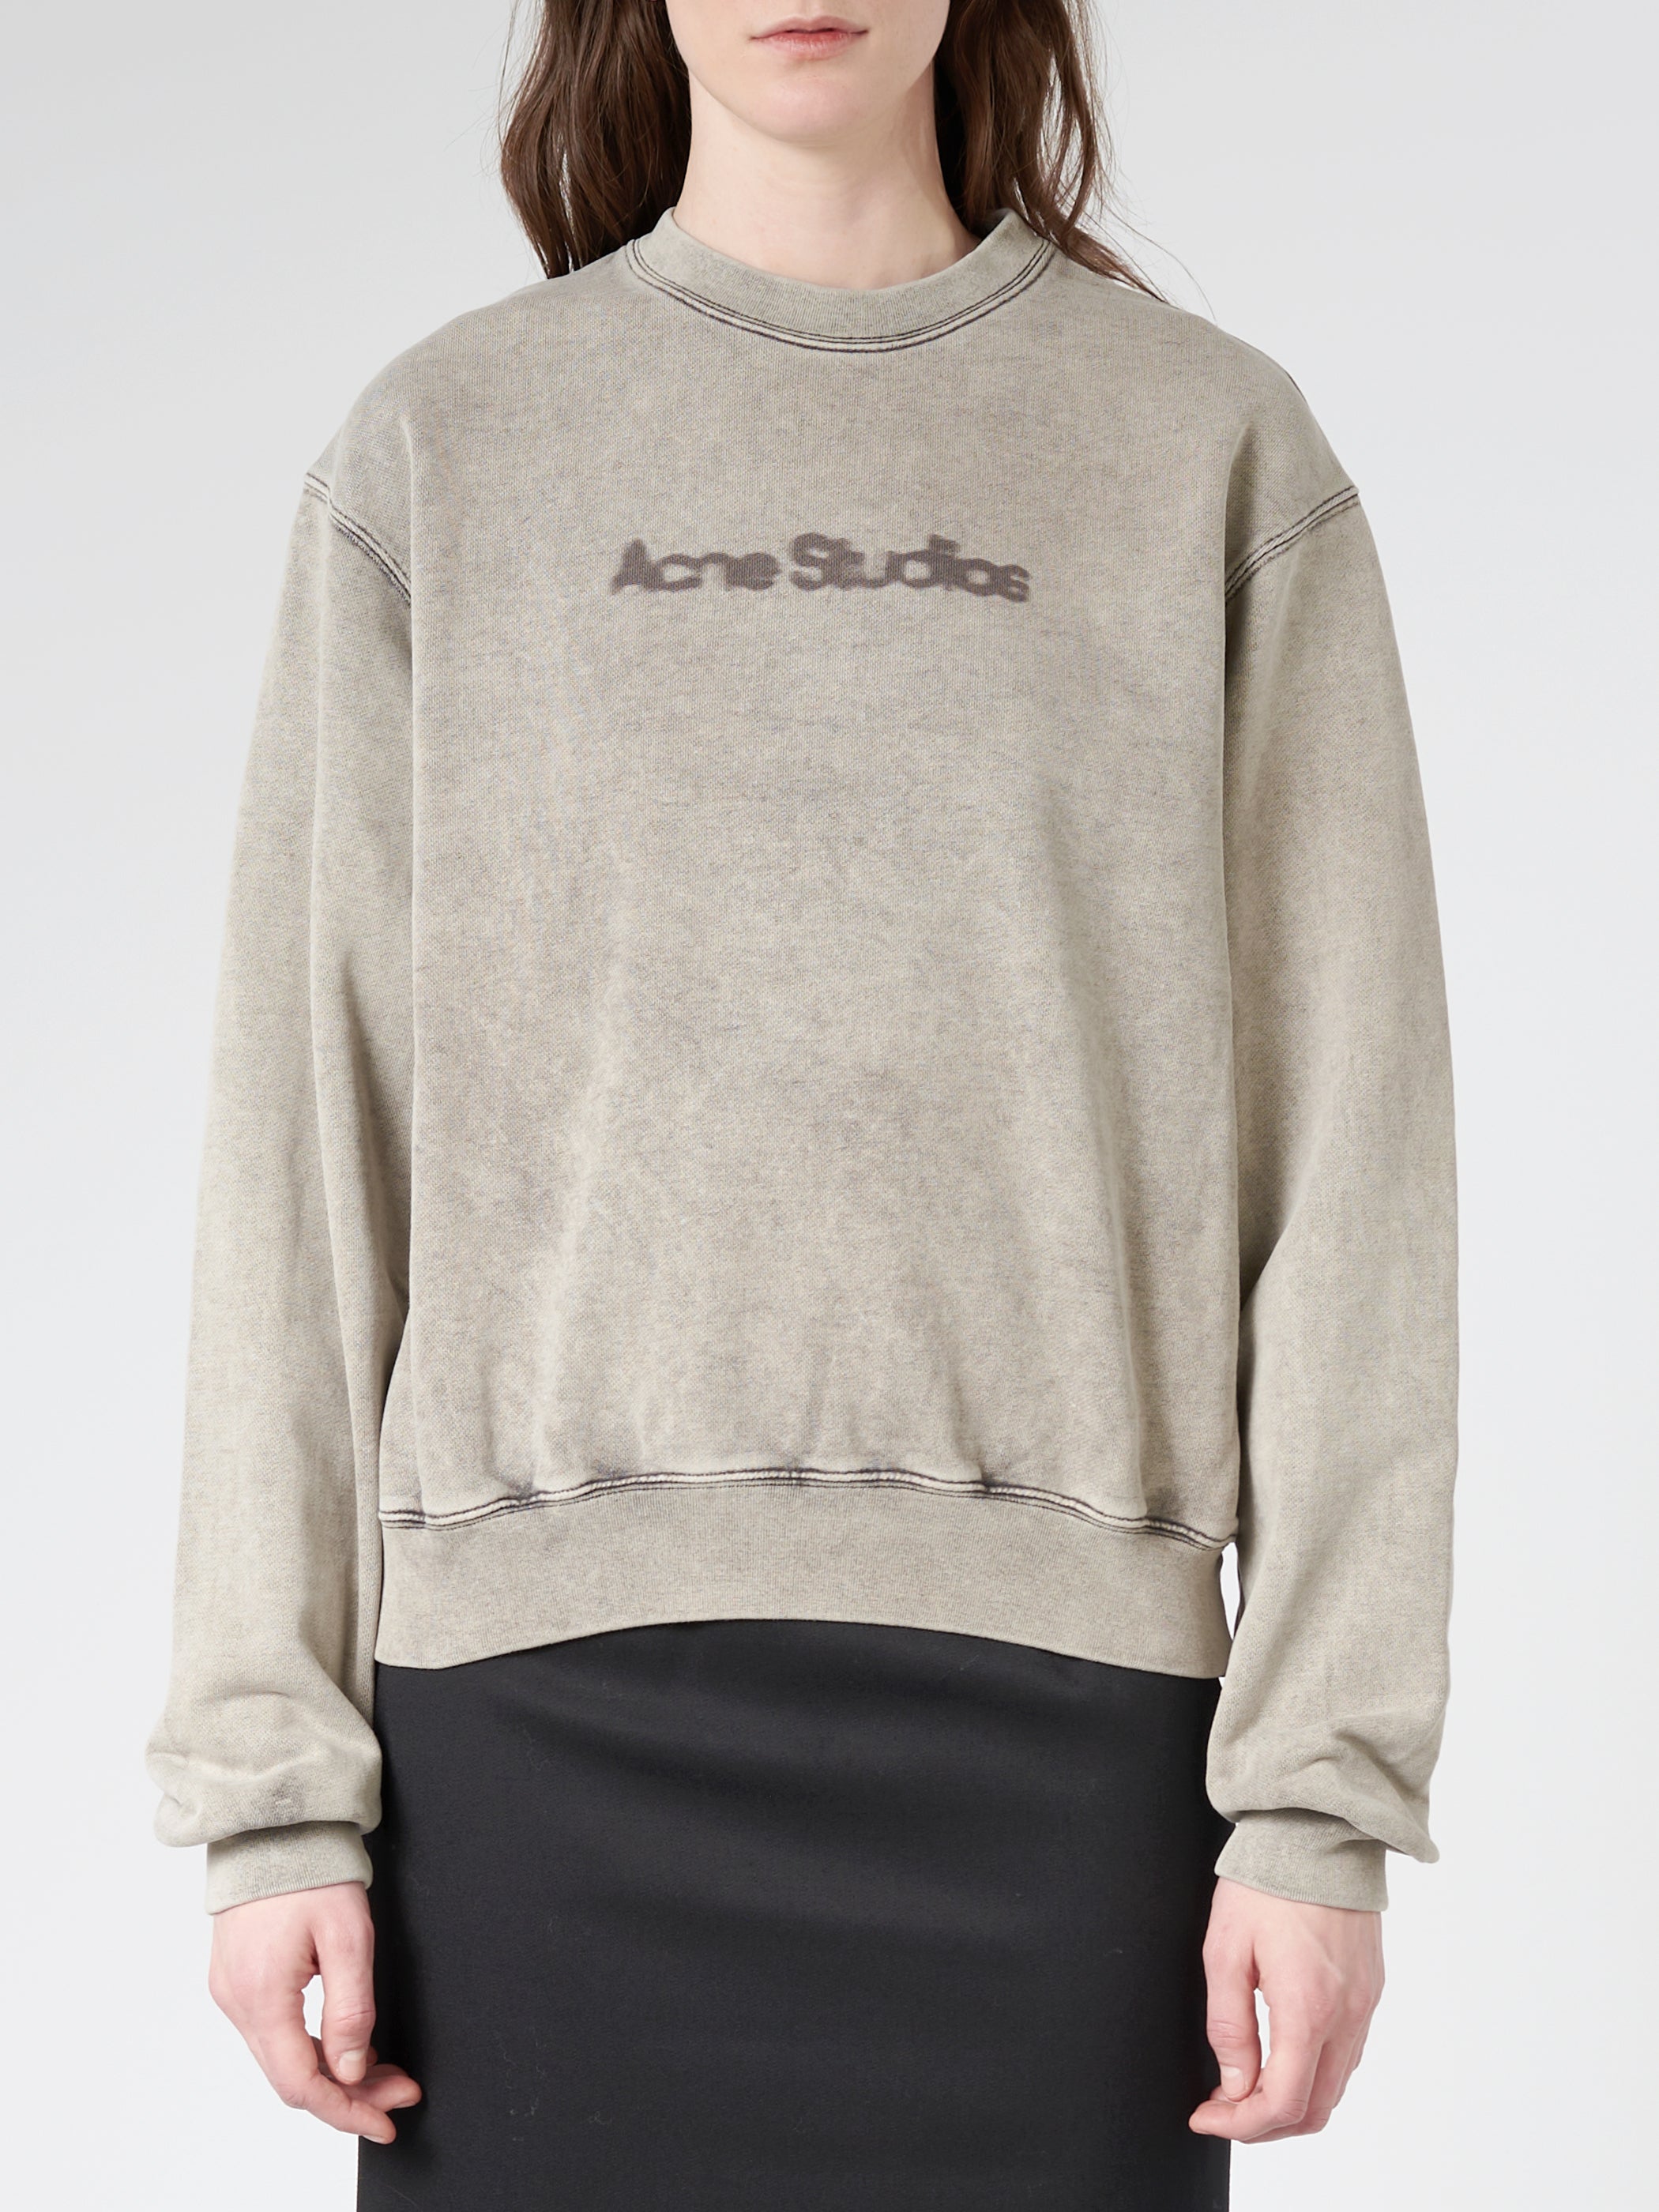 【売り人気】acne studios Garment dyed sweatshirt スウェット